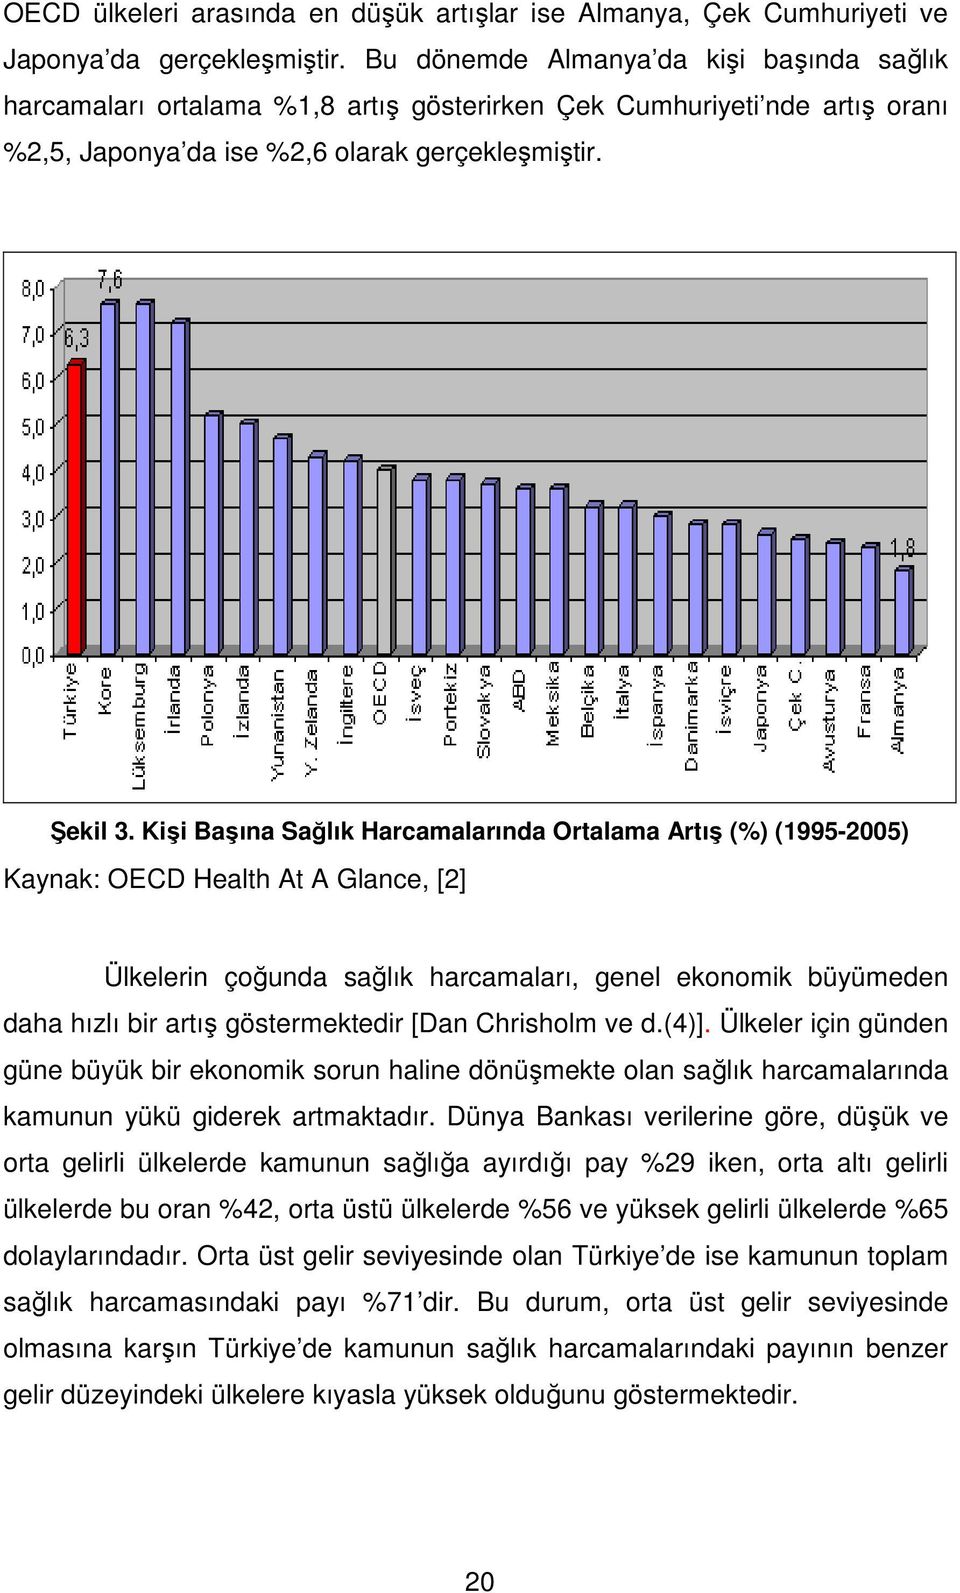 Kişi Başına Sağlık Harcamalarında Ortalama Artış (%) (1995-2005) Kaynak: OECD Health At A Glance, [2] Ülkelerin çoğunda sağlık harcamaları, genel ekonomik büyümeden daha hızlı bir artış